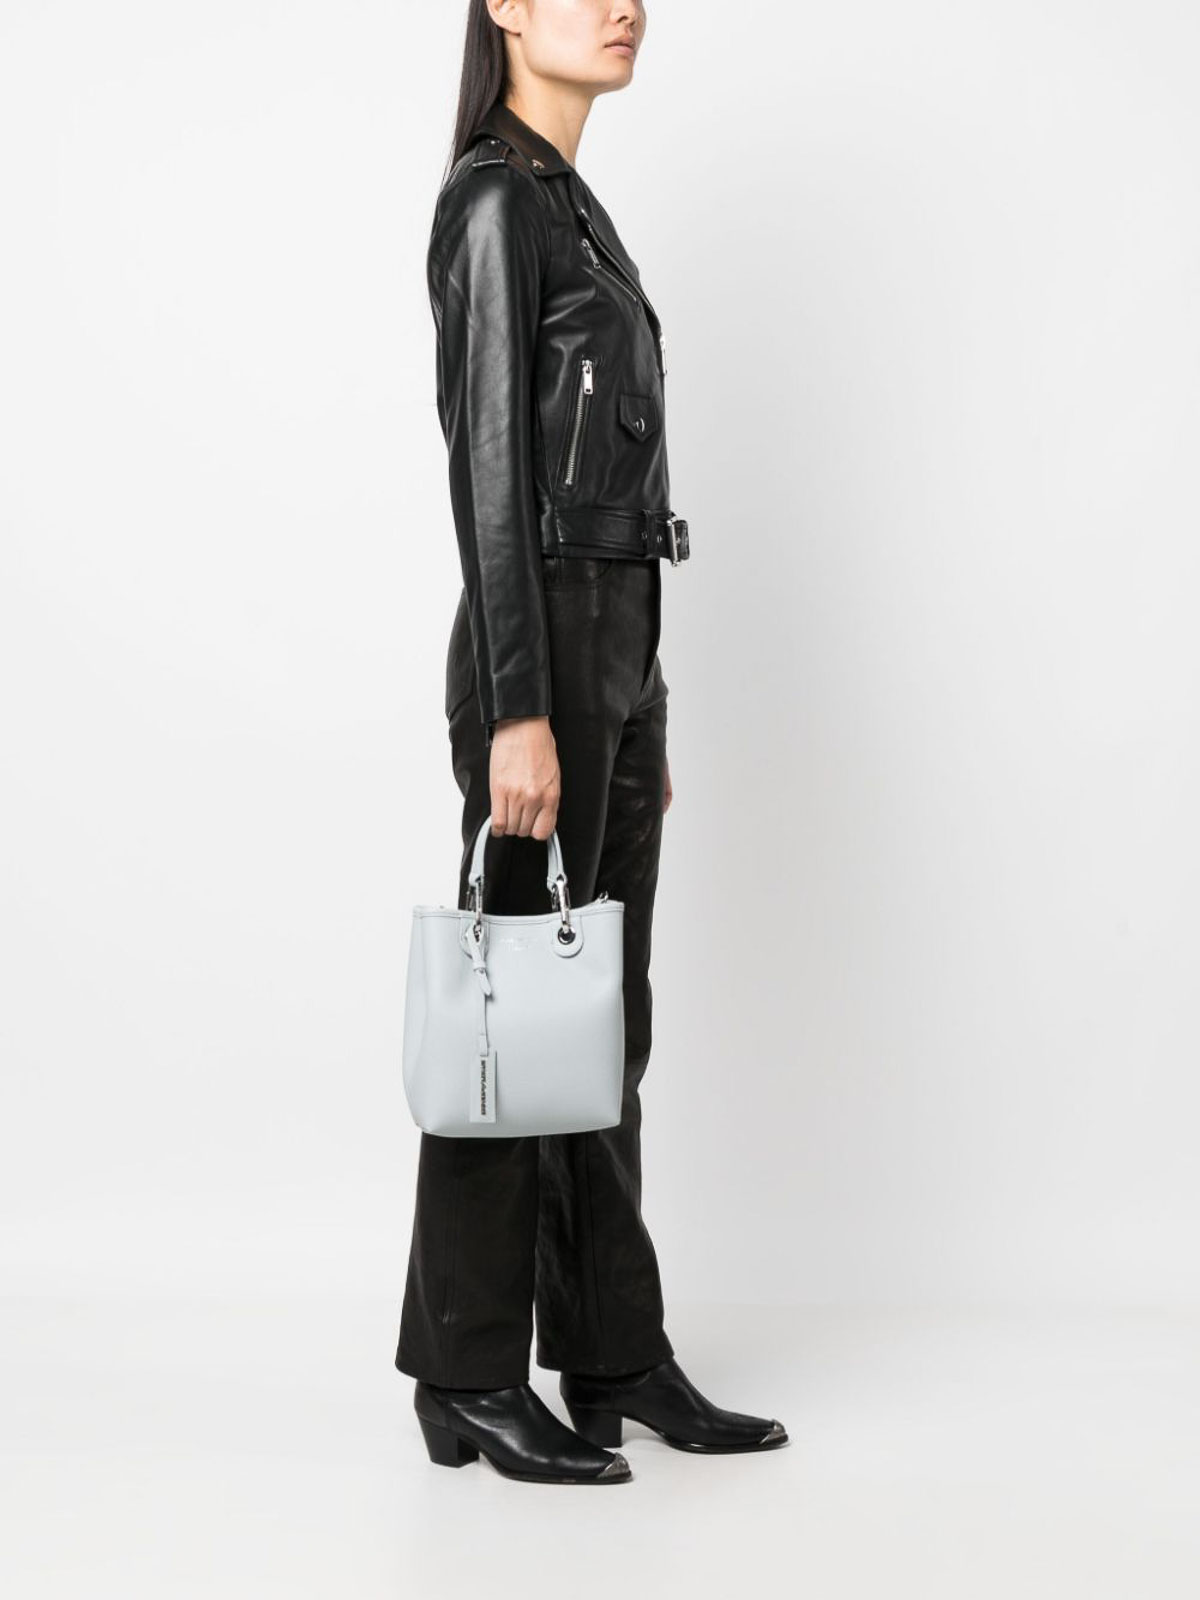 Emporio Armani Myea Vertical Black Shopping Bag